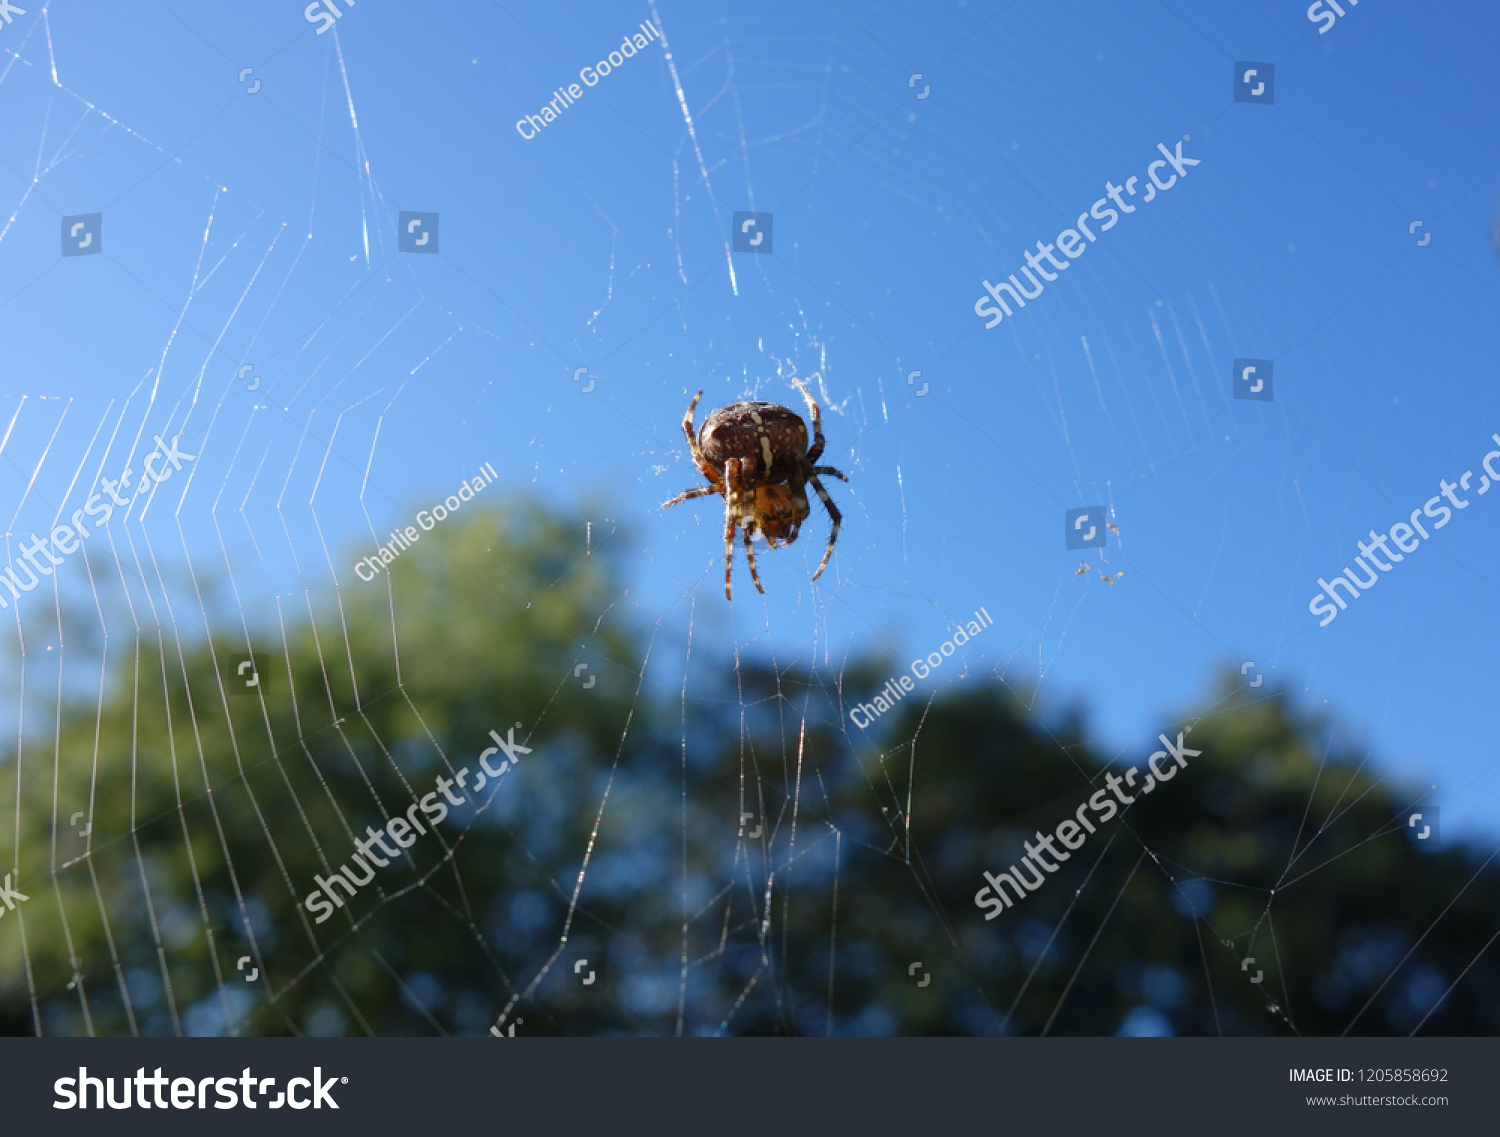 Brown Garden Spider On White Webs Stock Photo Edit Now 1205858692